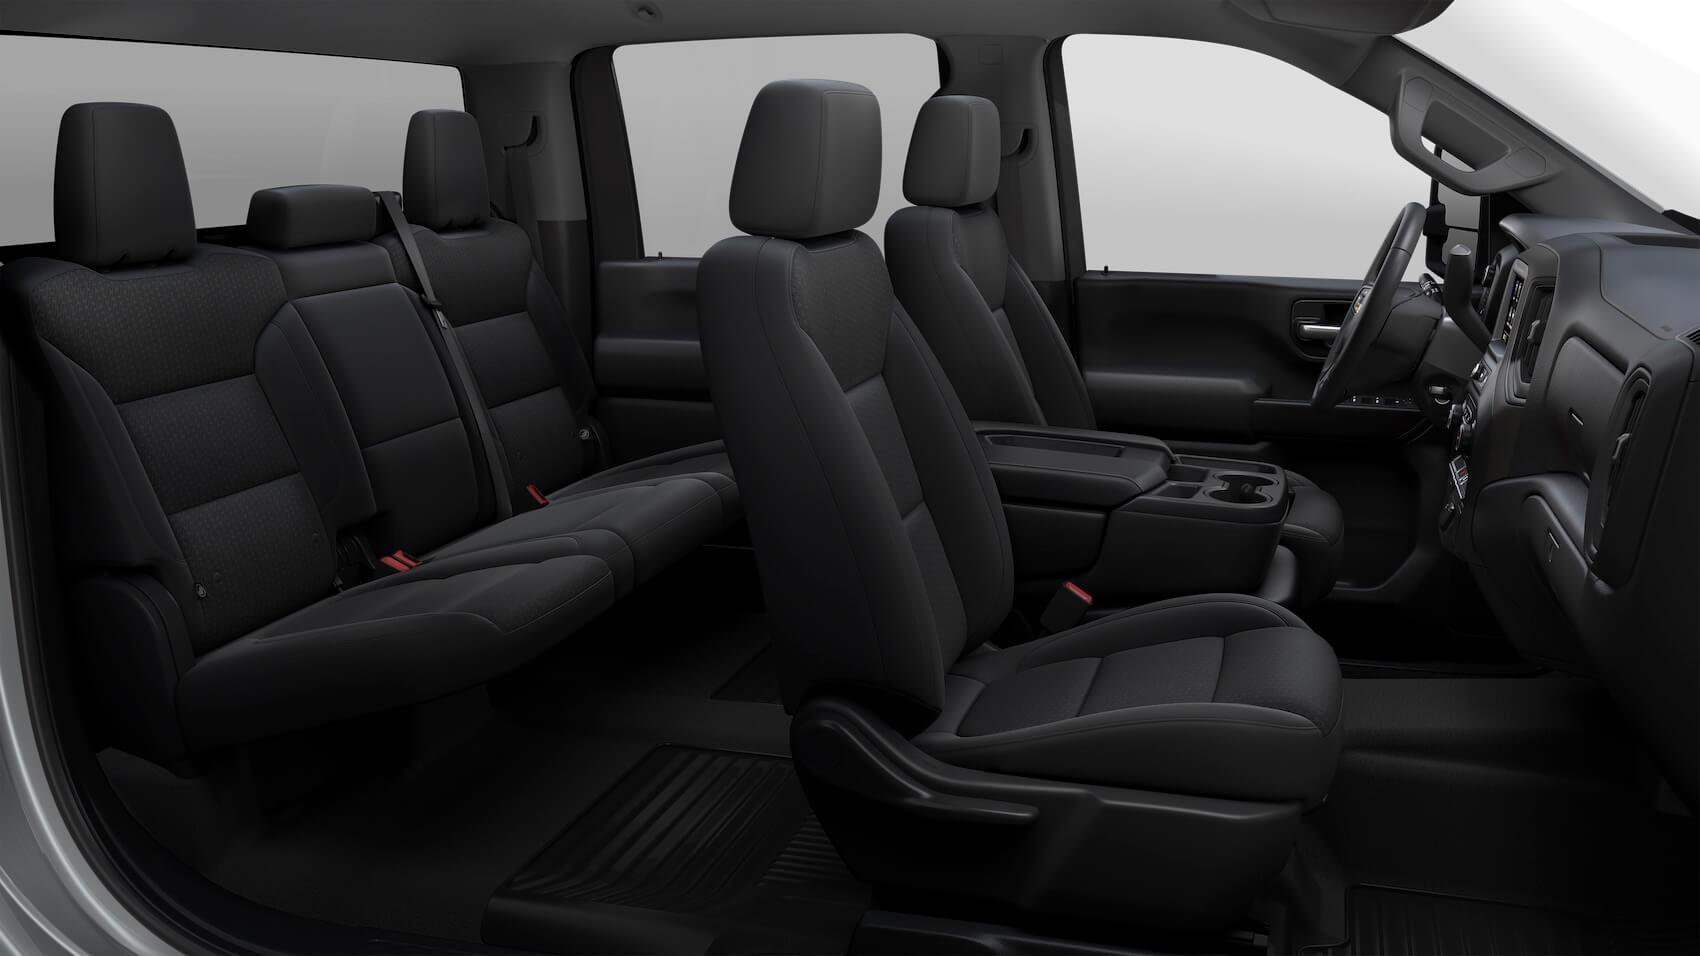 Chevy Silverado 3500 black Interior Seating